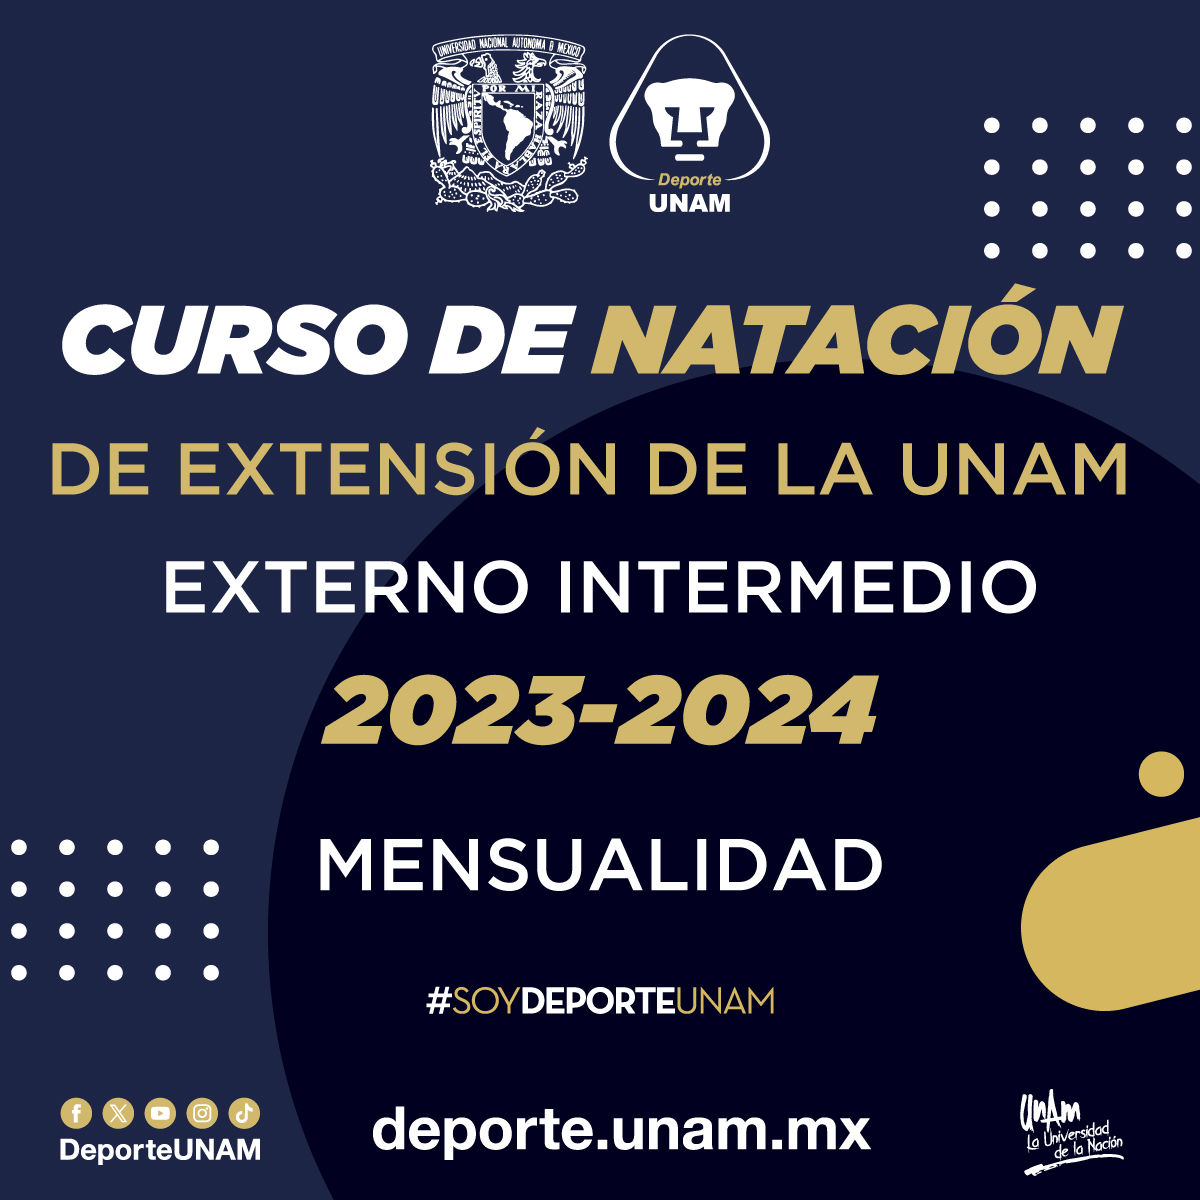 CURSO DE NATACIÓN DE EXTENSIÓN DE LA UNAM 2023 - 2024 EXTERNOS INTERMEDIOS MENSUALIDAD